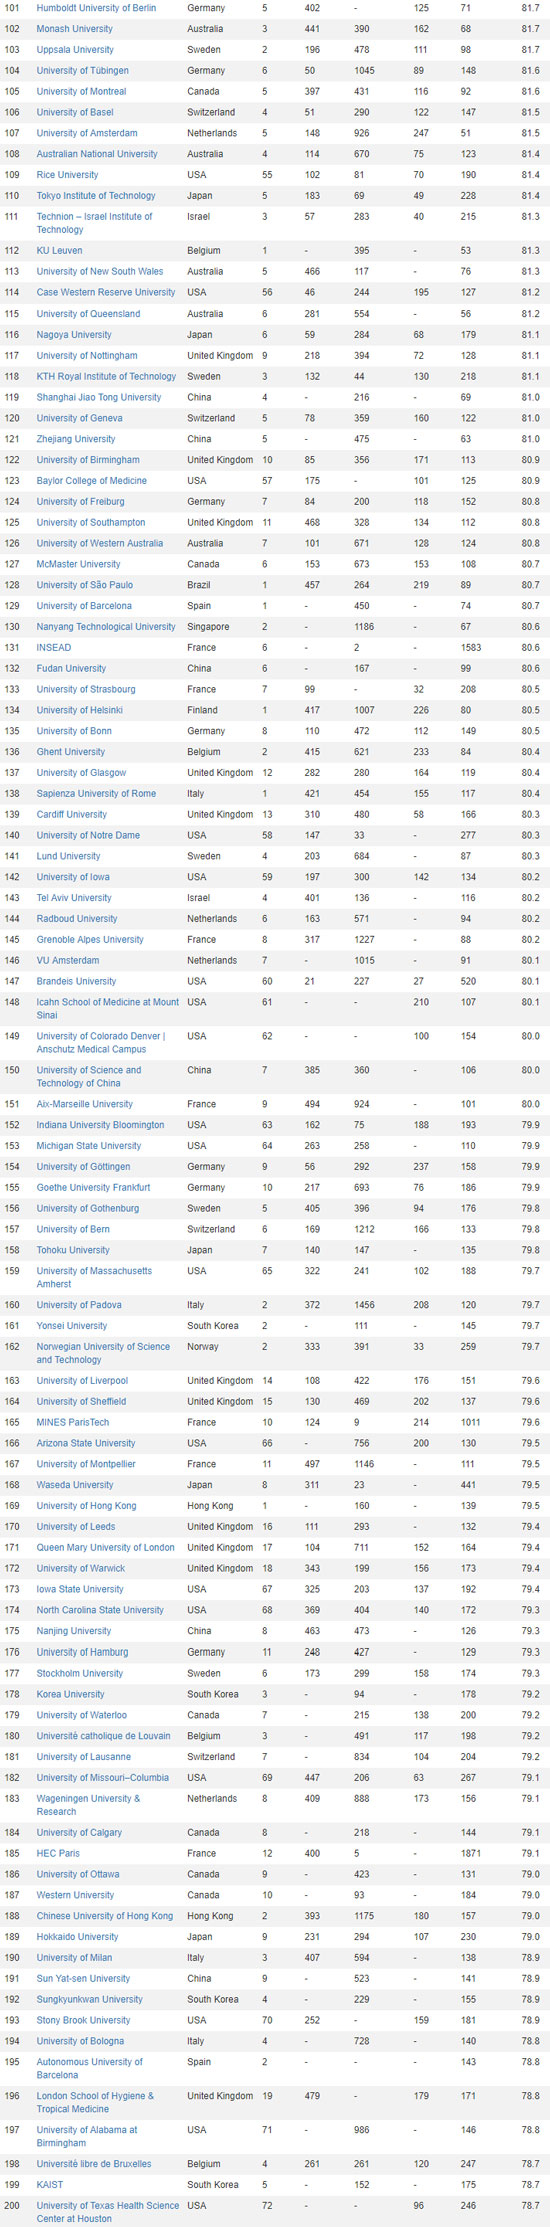 2020年cwur世界大学排名发布!美国八所大学冲入前十!